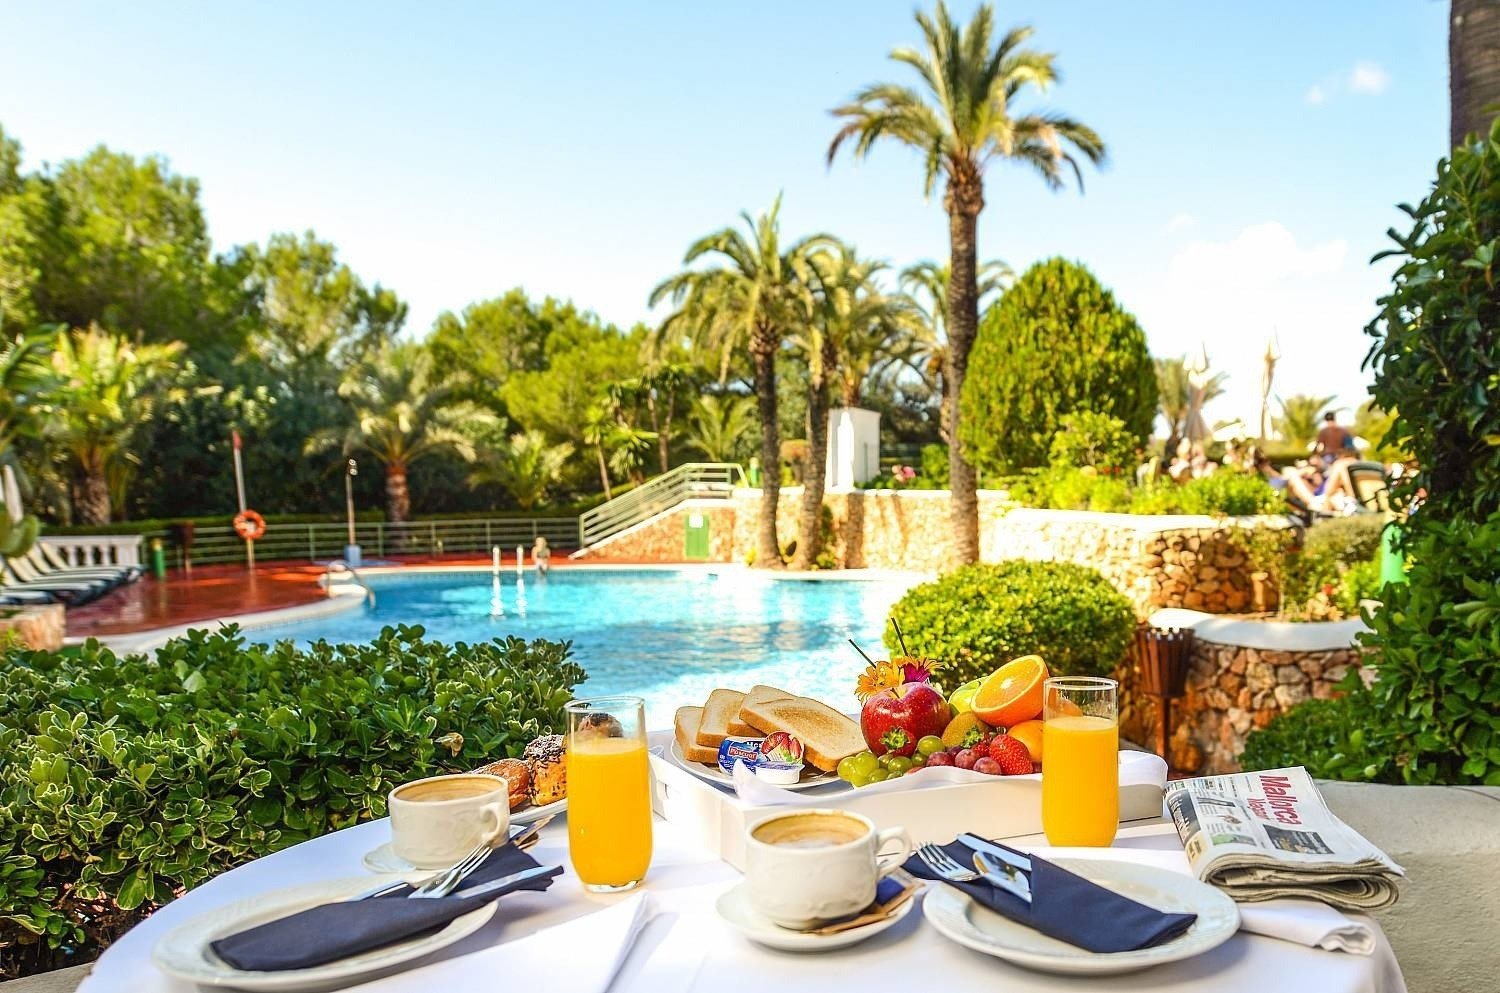 Detalle de mesa cerca de la piscina exterior del hotel Ona Cala Pi, en Mallorca